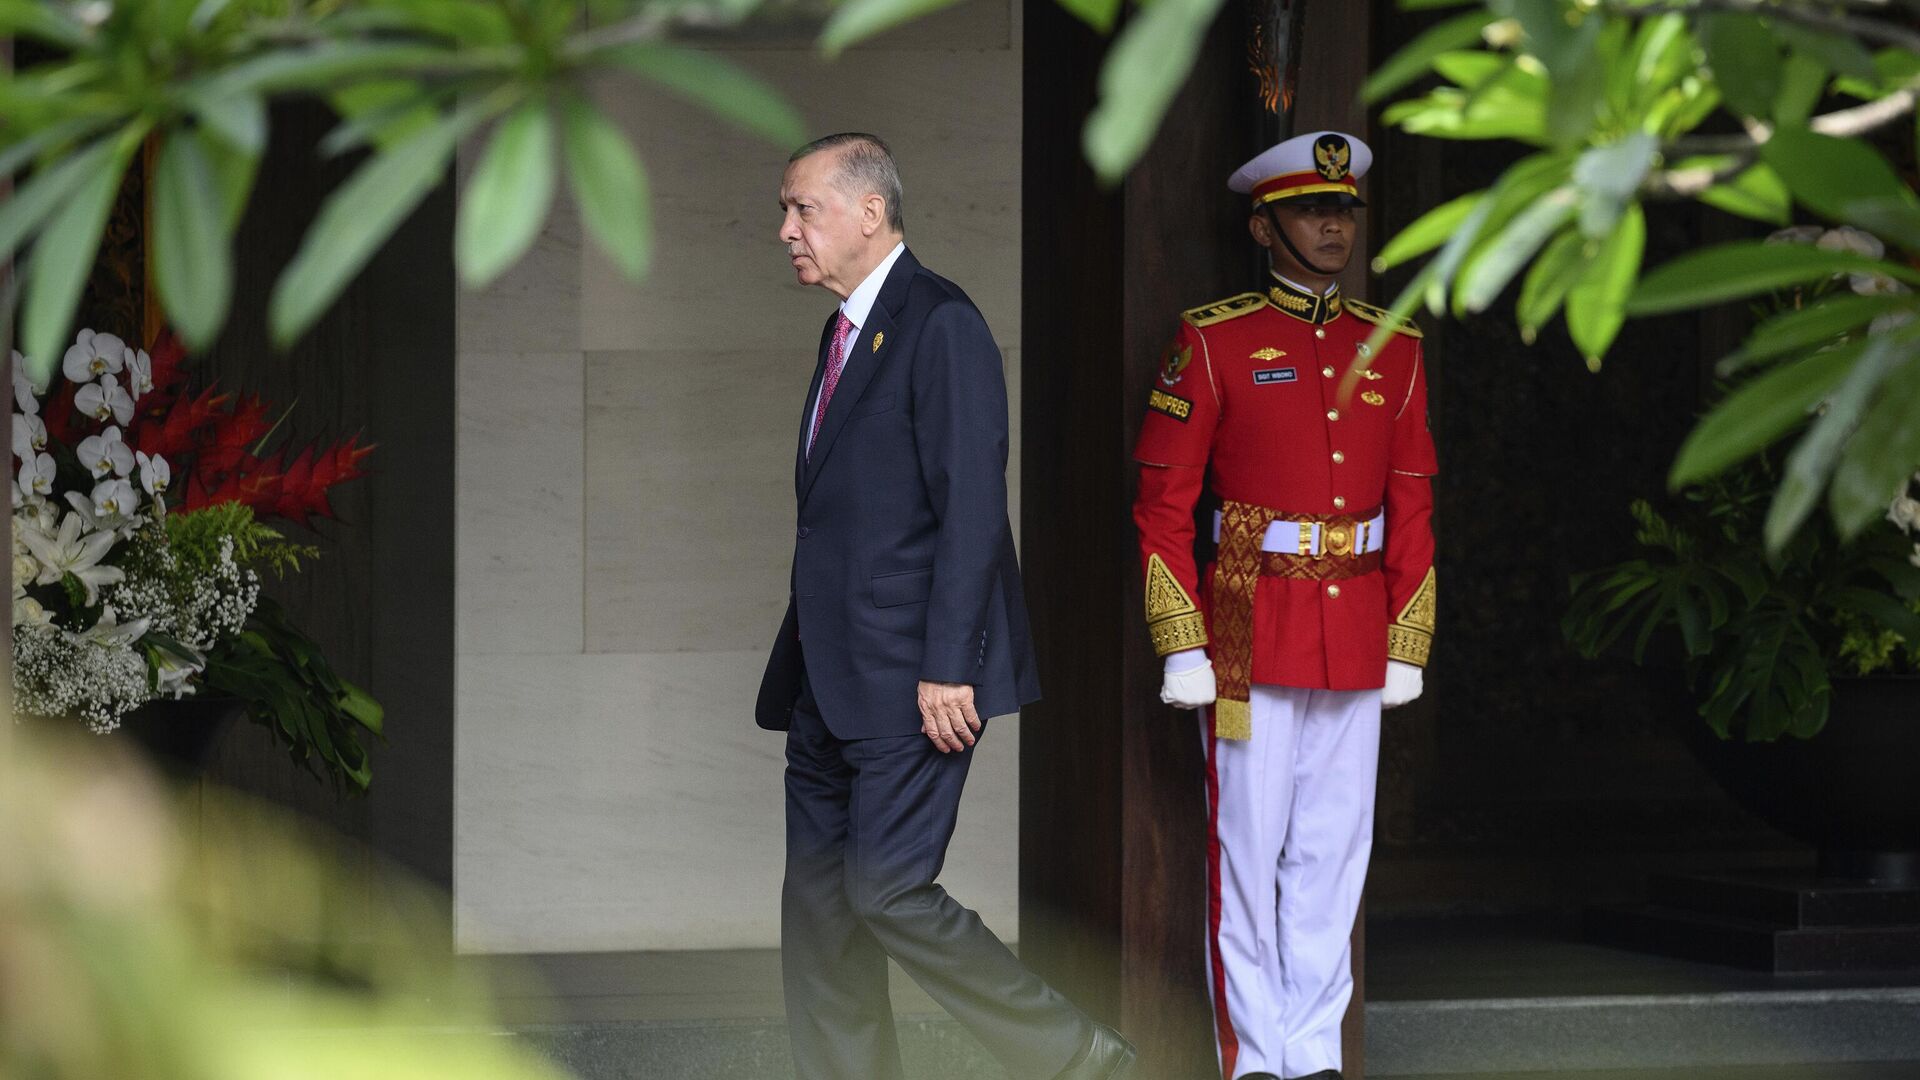 Президент Турции Реджеп Тайип Эрдоган прибывает к началу саммита G20 в Бали, Индонезия - Sputnik Латвия, 1920, 29.11.2022